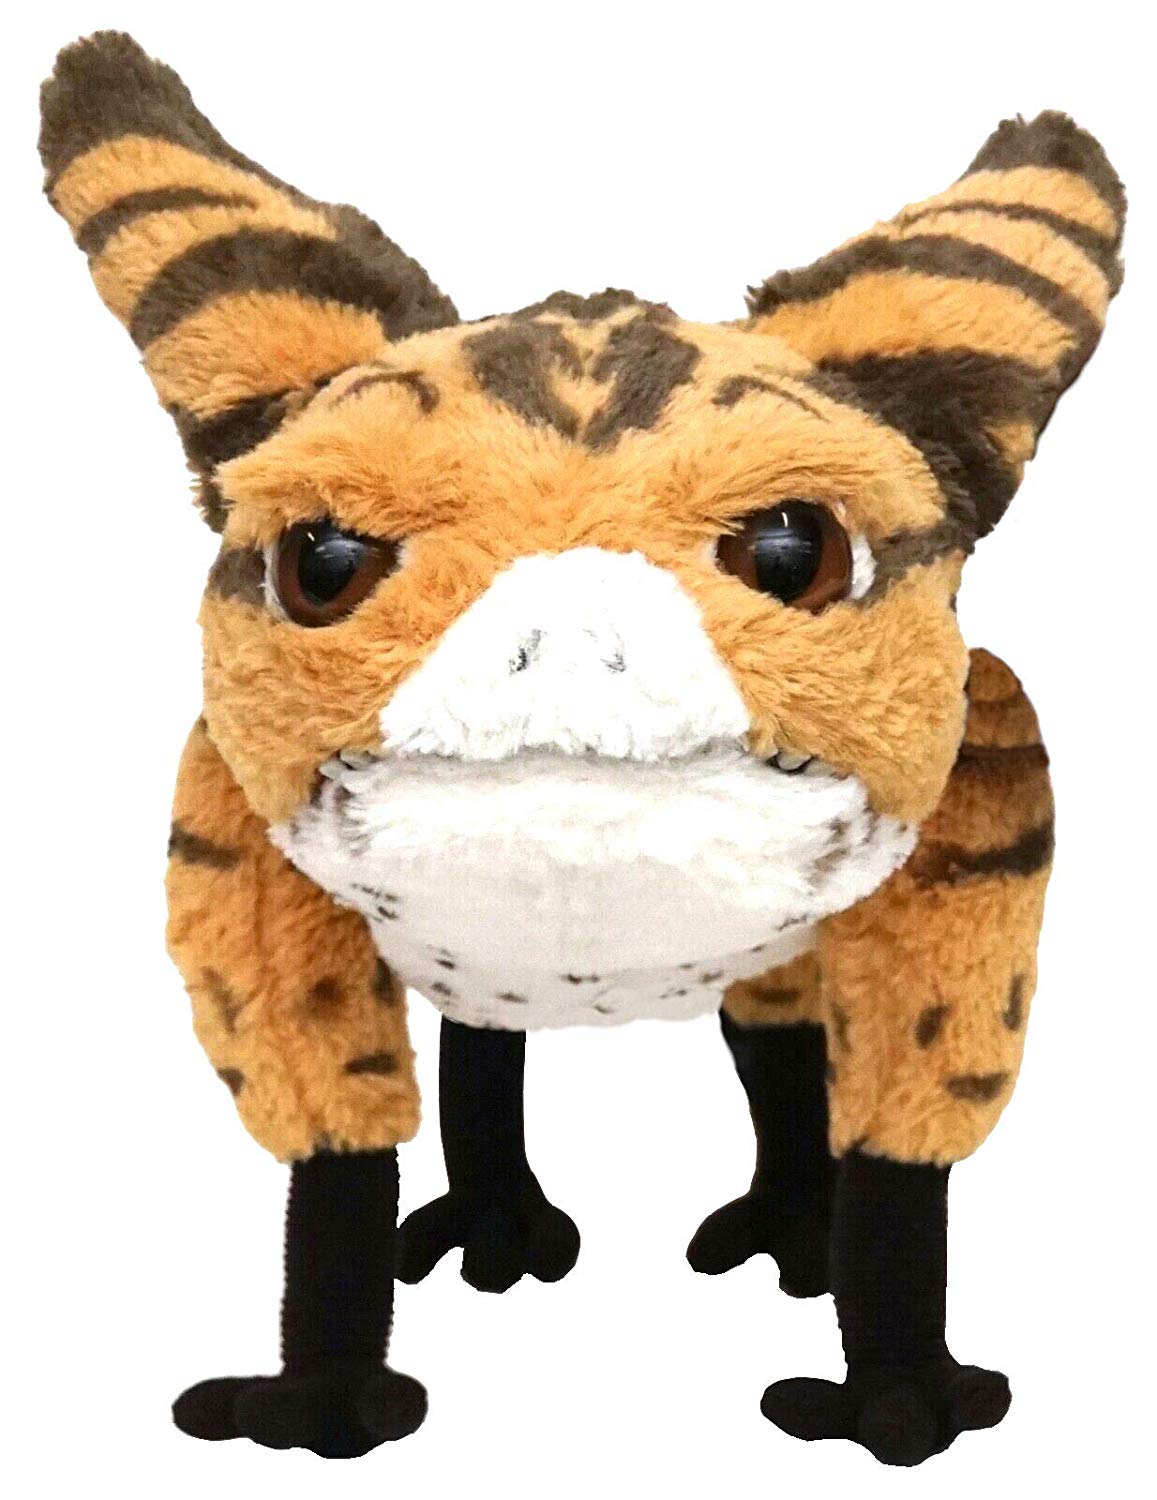 fifi stuffed animal